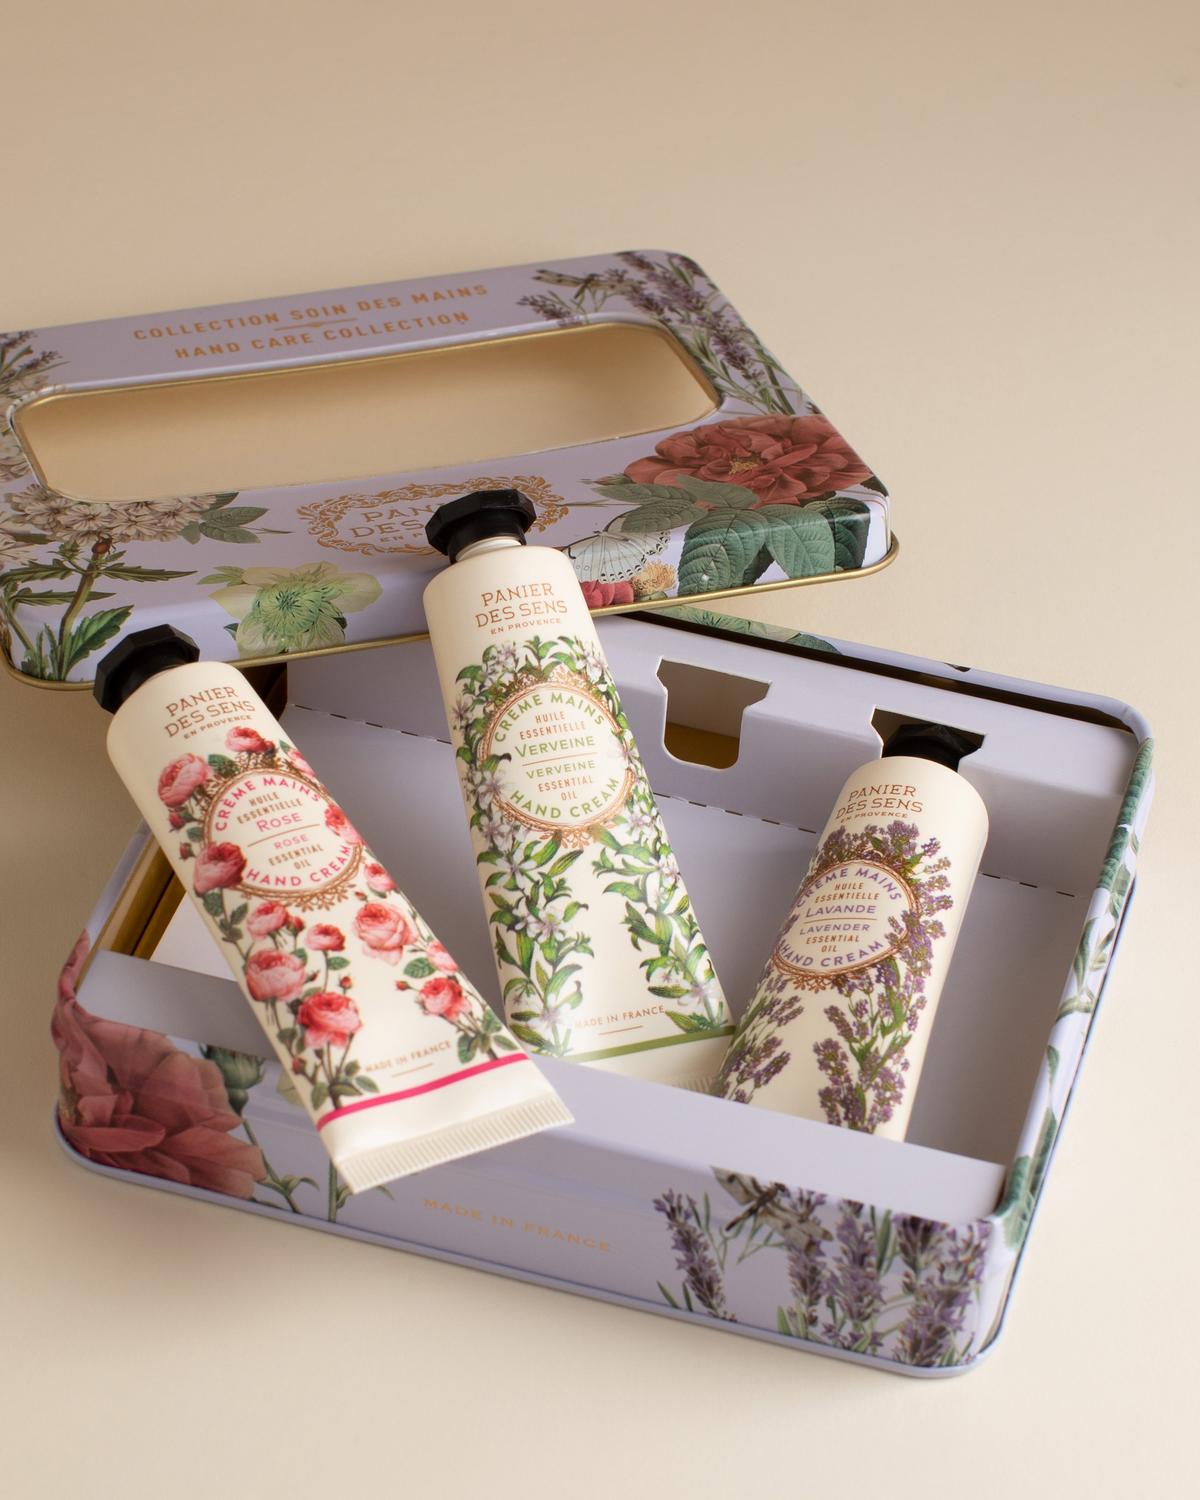 Panier des Sens Essentials Hand Cream Trio Gift Set -  Assorted